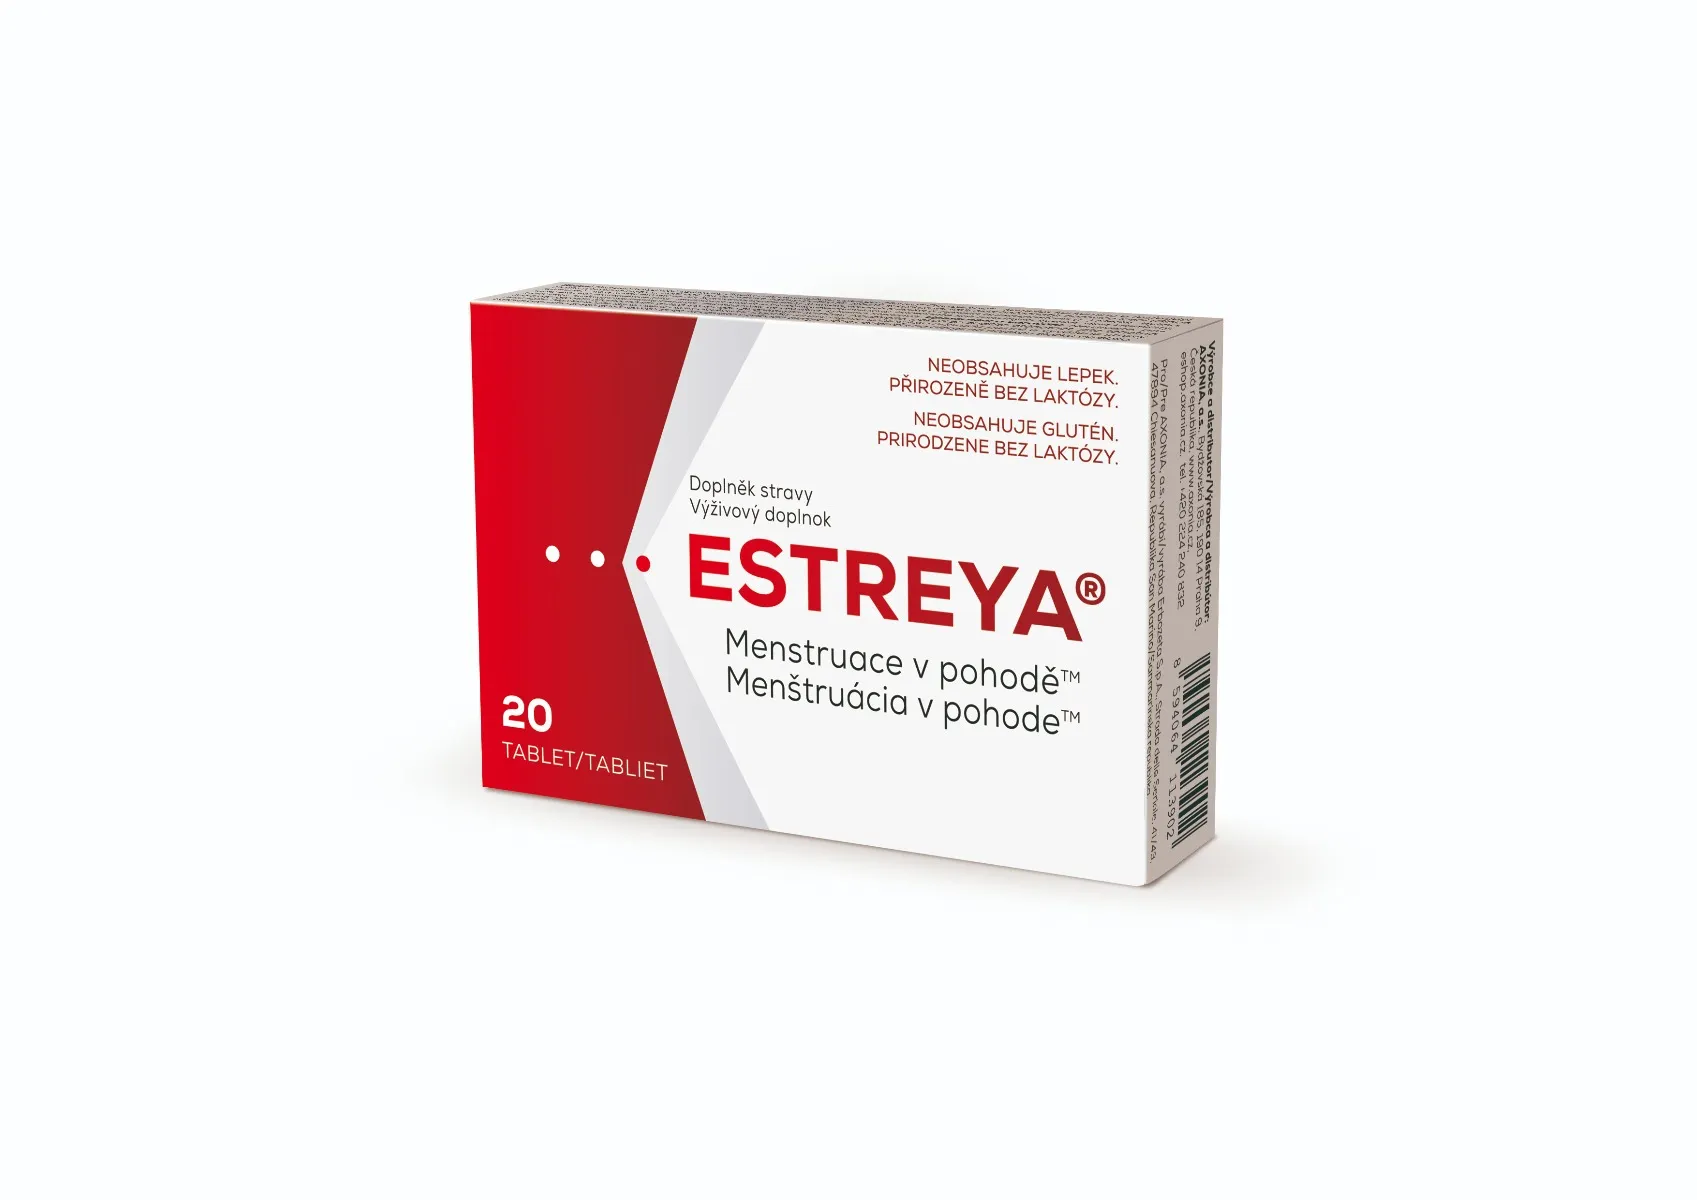 Estreya Menstruace v pohodě